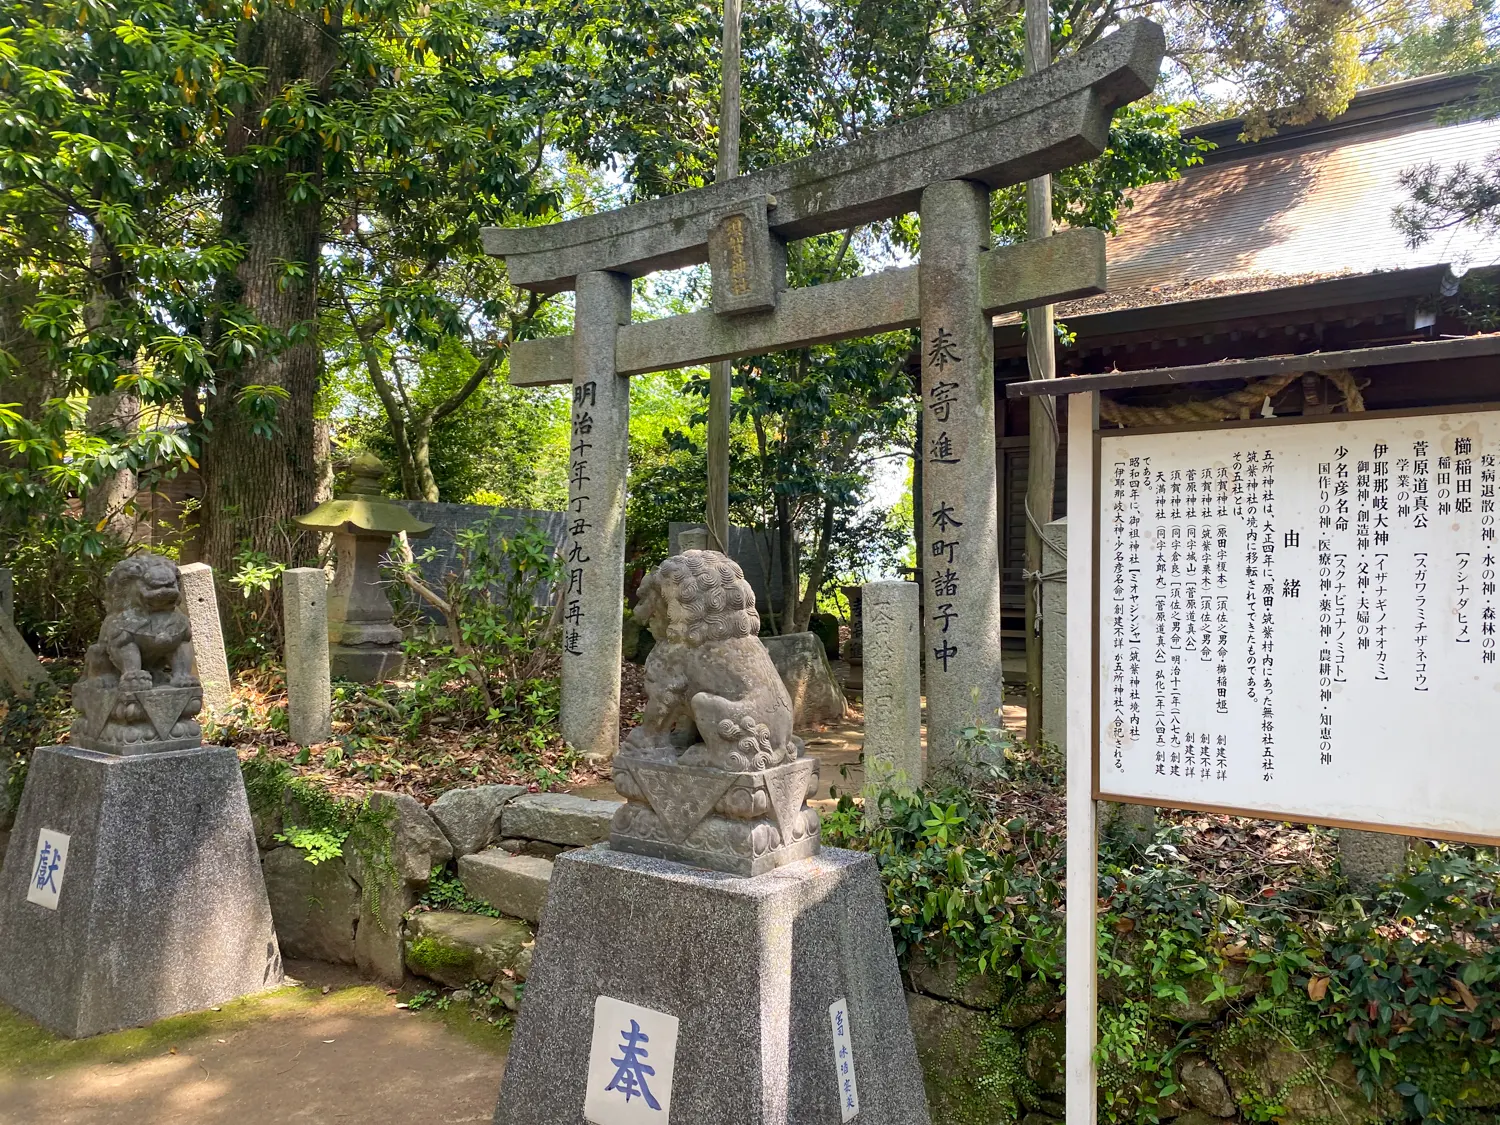 珍しい神様を祀る神社 筑紫神社13